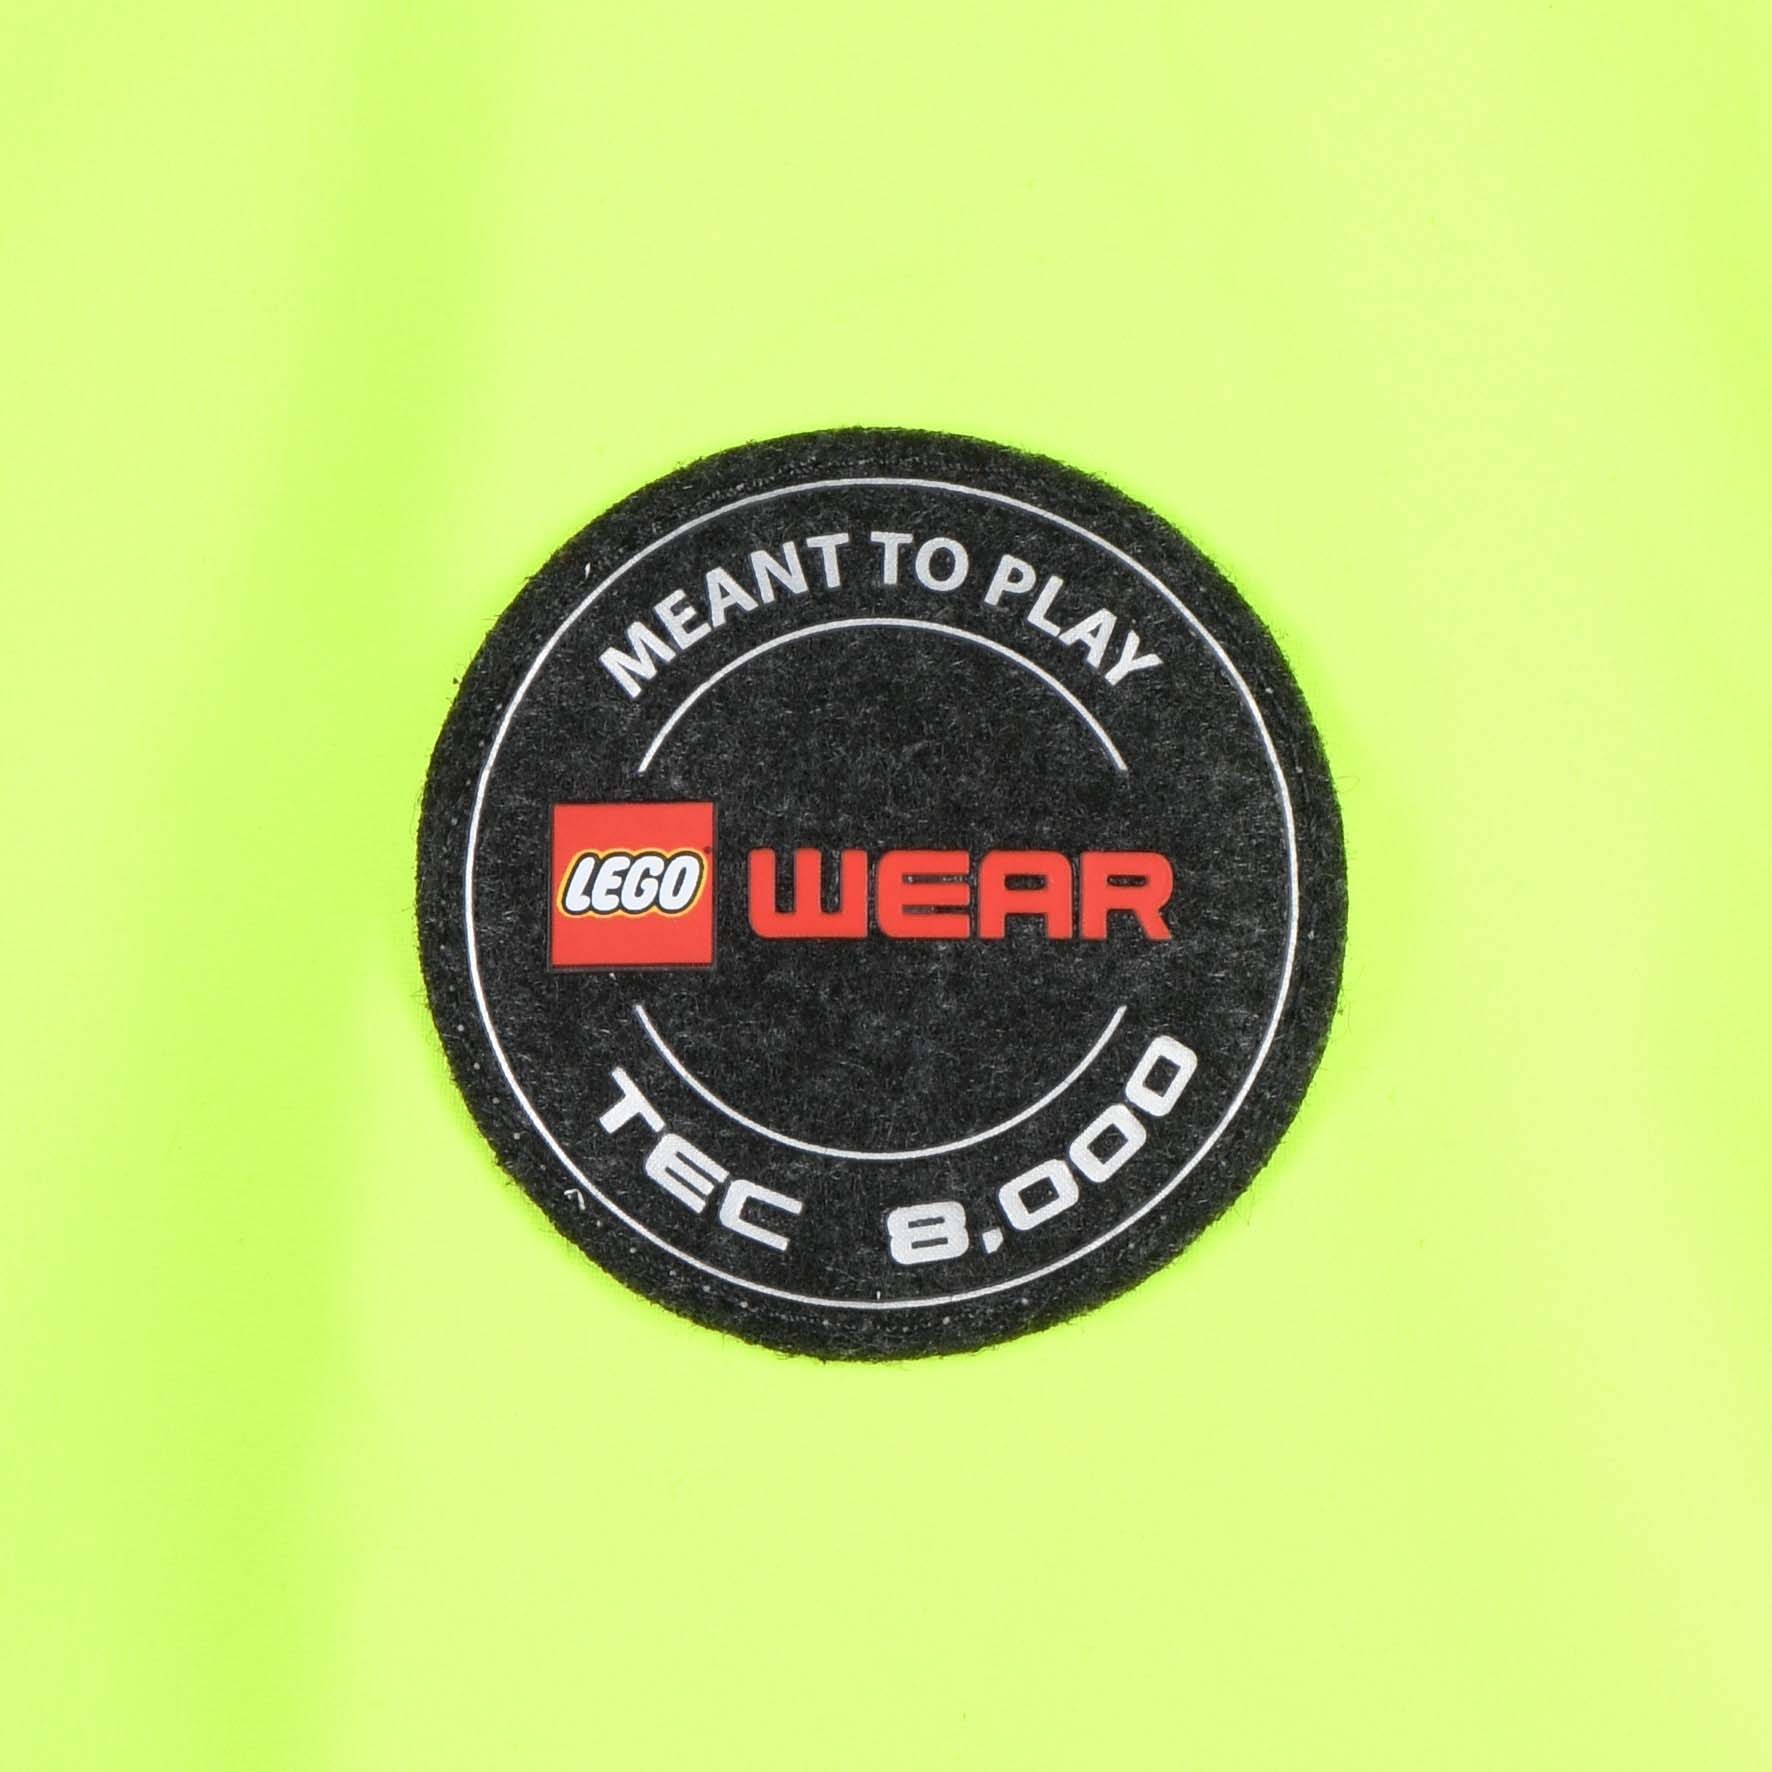 LEGO dünne Regenjacke Outdoorjacke LWJORI 206 grau-gelb | Jacken |Mädchen  |Fannyswelt